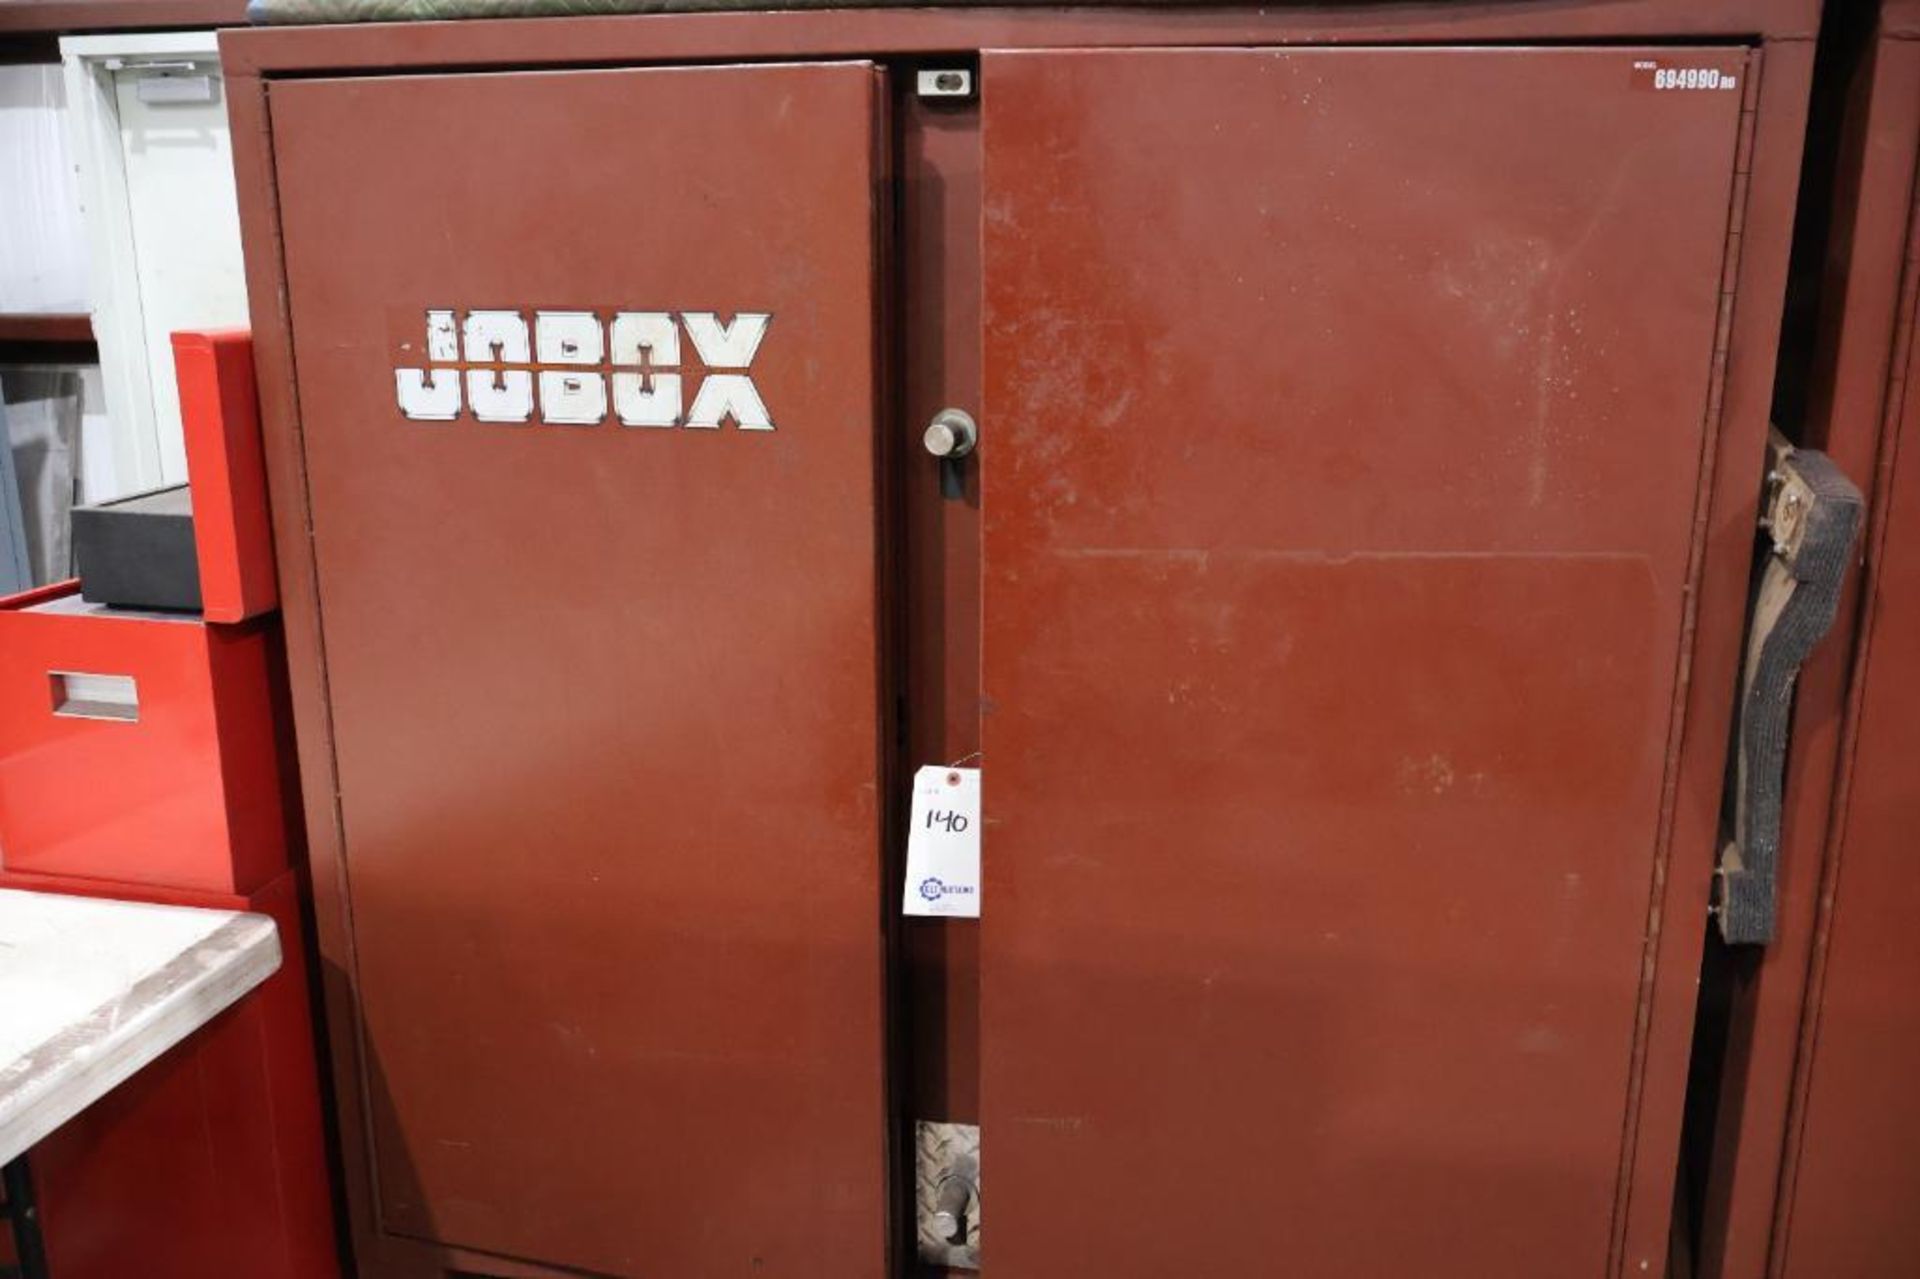 Jobox 694990ro 2 door jobsite box - Image 2 of 6